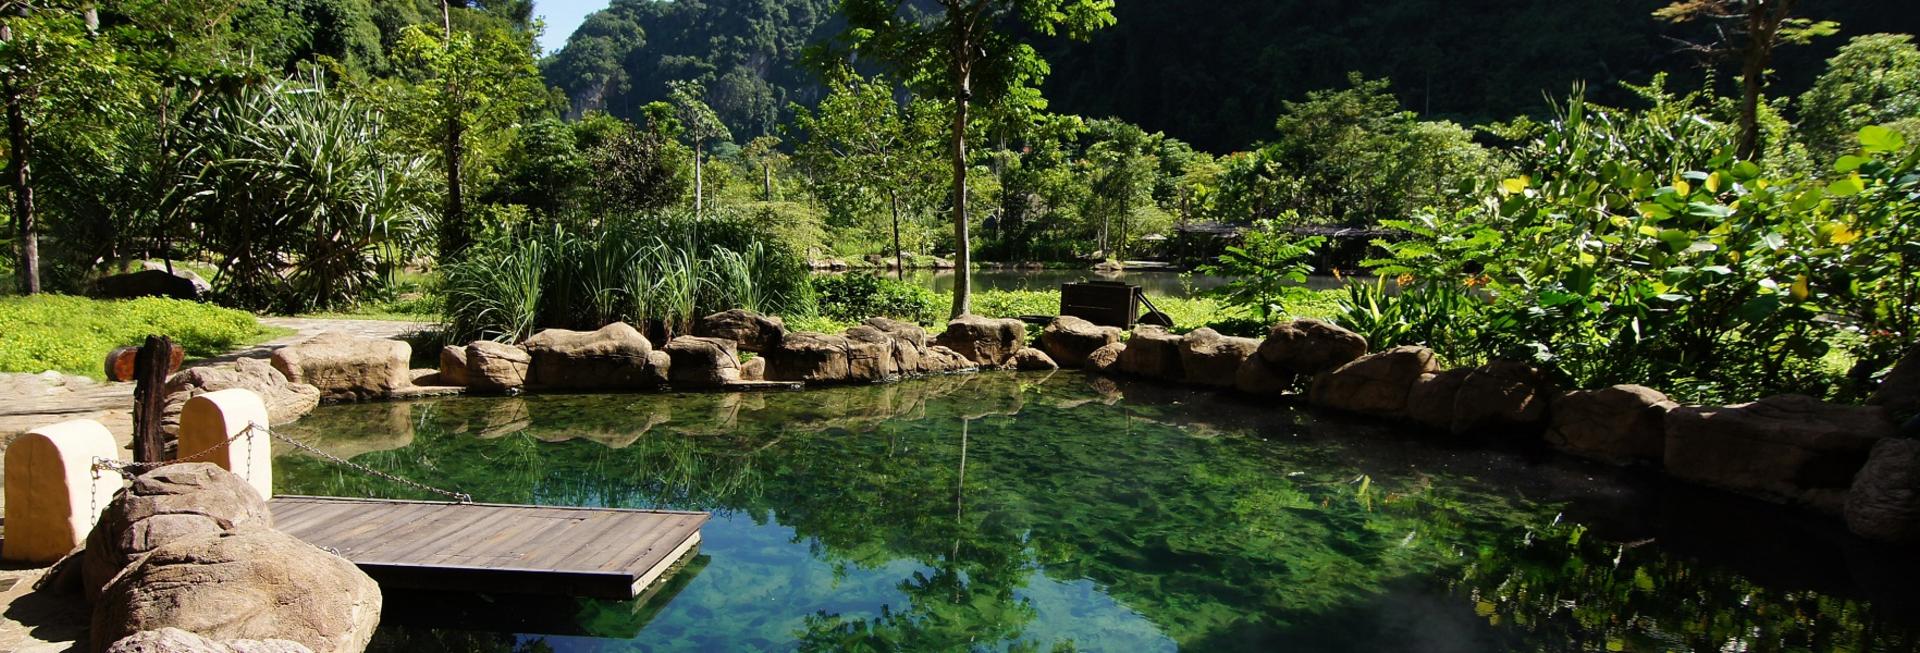 The Banjaran Hotsprings Retreat, Ipoh, Malaysia